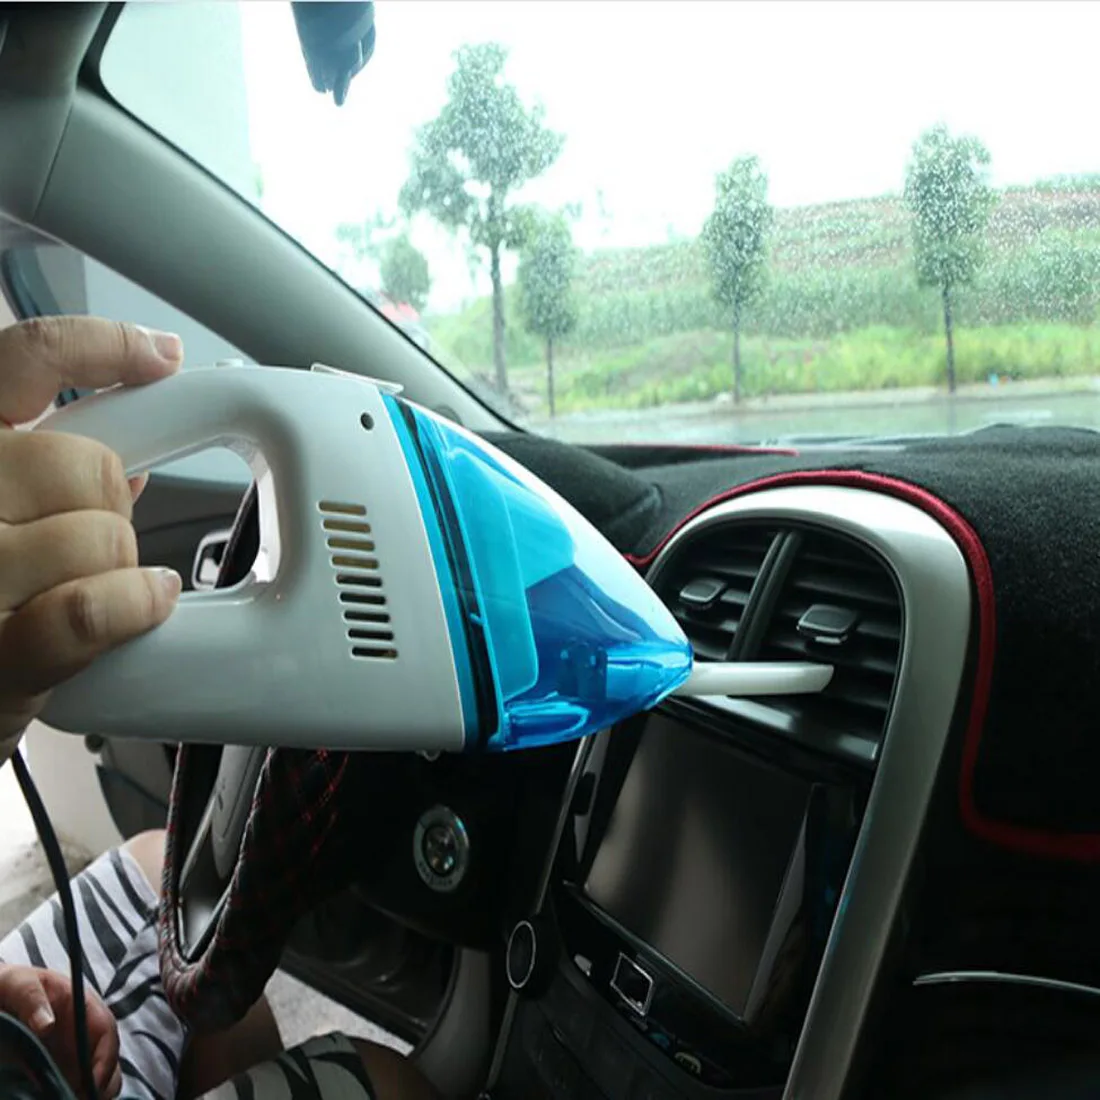 Dongzhen автомобильный Вакуумный Очиститель пылесборник Ho использовать удерживать влажный и сухой двойного назначения мини пылесос для дома универсальные аксессуары